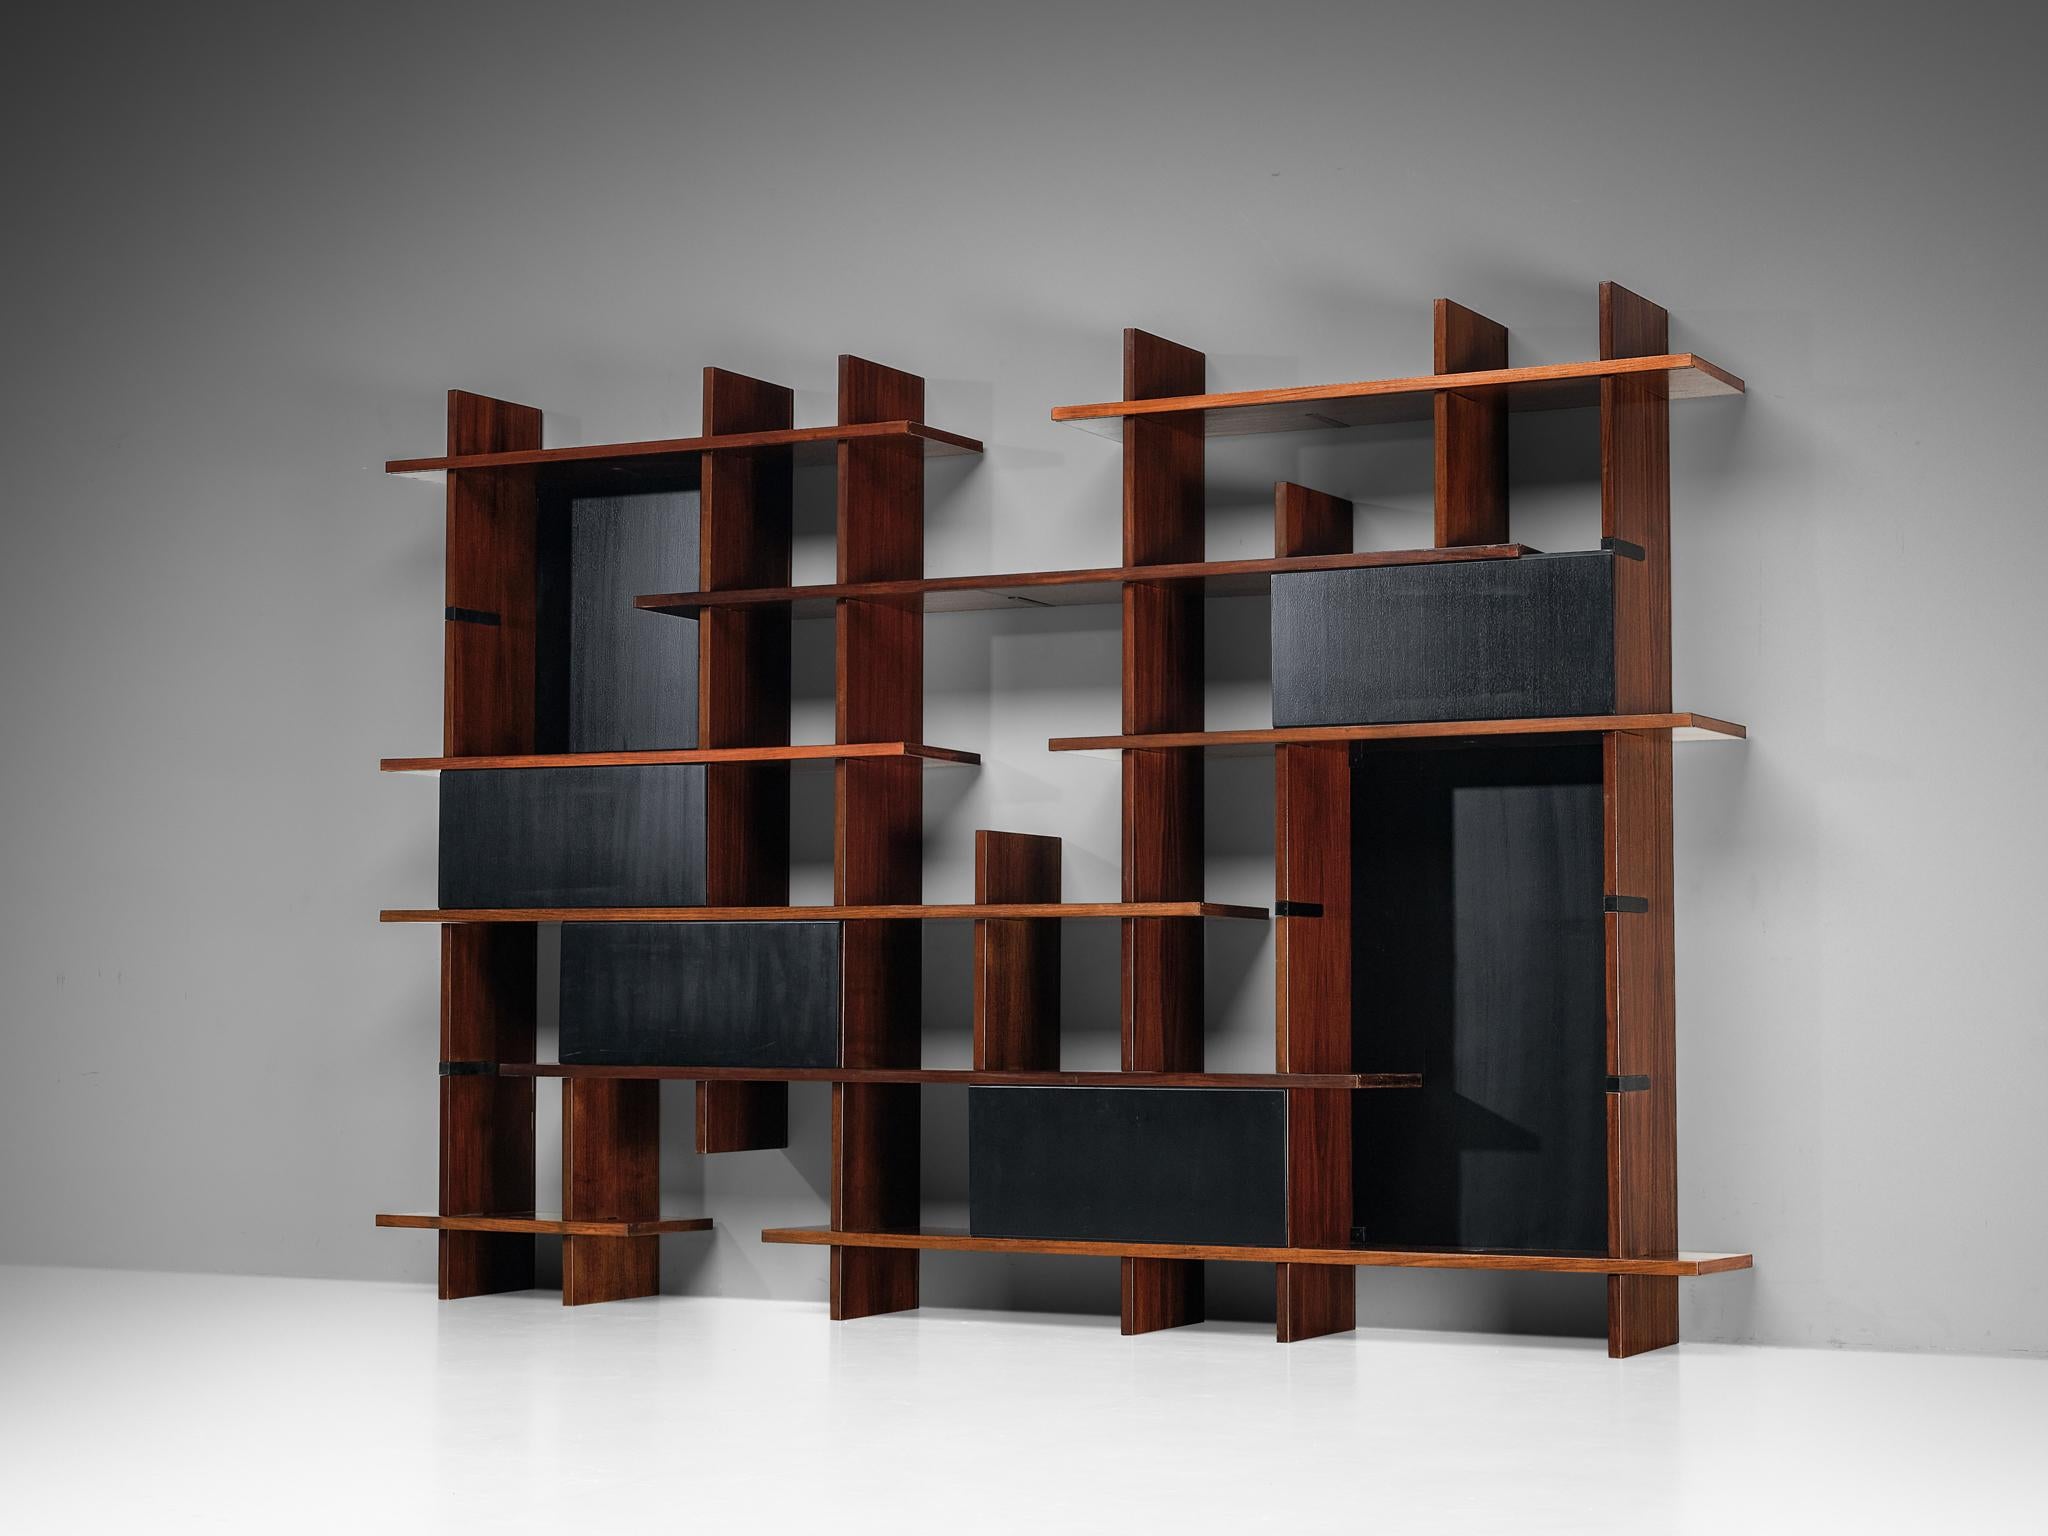 Eugenio Gerli für Tecno ,'Domino' Bibliothek, Holz, schwarz lackiertes Holz, Italien, 1966

Modernes und attraktives modulares Bücherregalsystem, entworfen von Eugenio Gerli für Tecno im Jahr 1966. Dieses Stück kann in verschiedenen Kompositionen